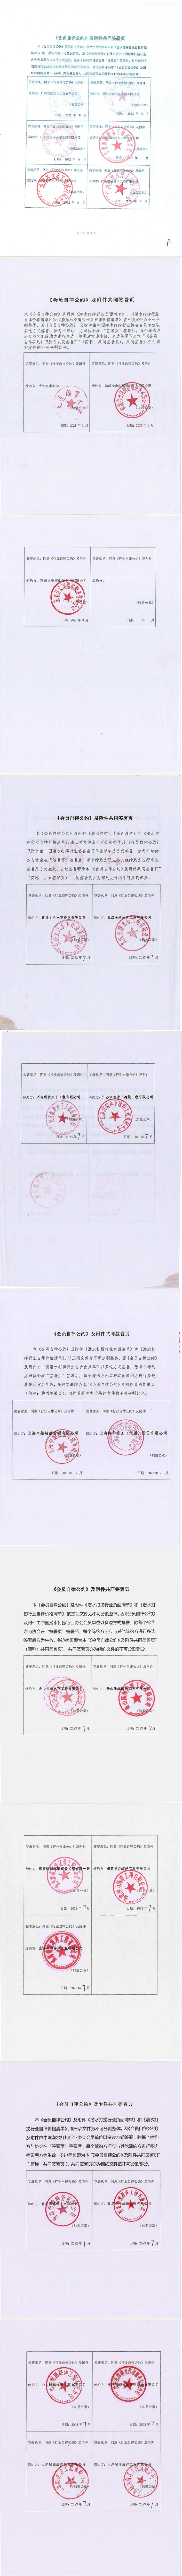 中国潜水救捞行业协会关于发布《会员自律公约》及配套文件会员单位名单的通知_02.jpg